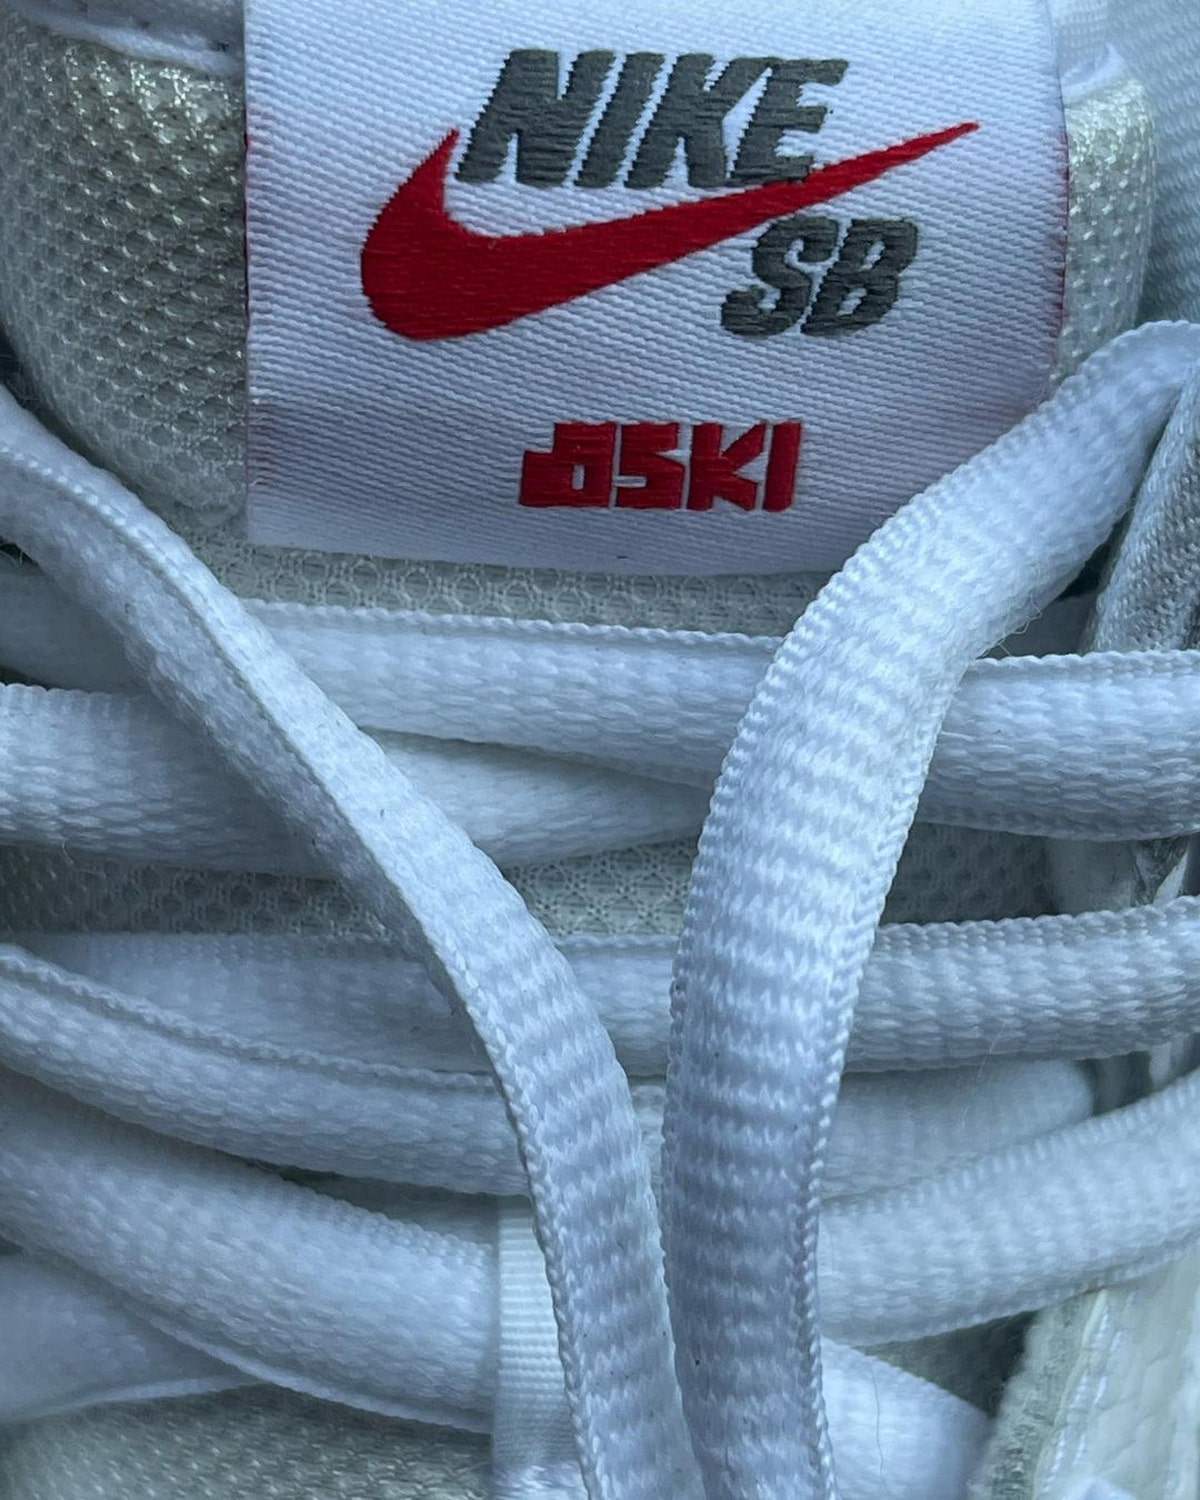 Oski Nike SB Dunk High White Shark Release Details